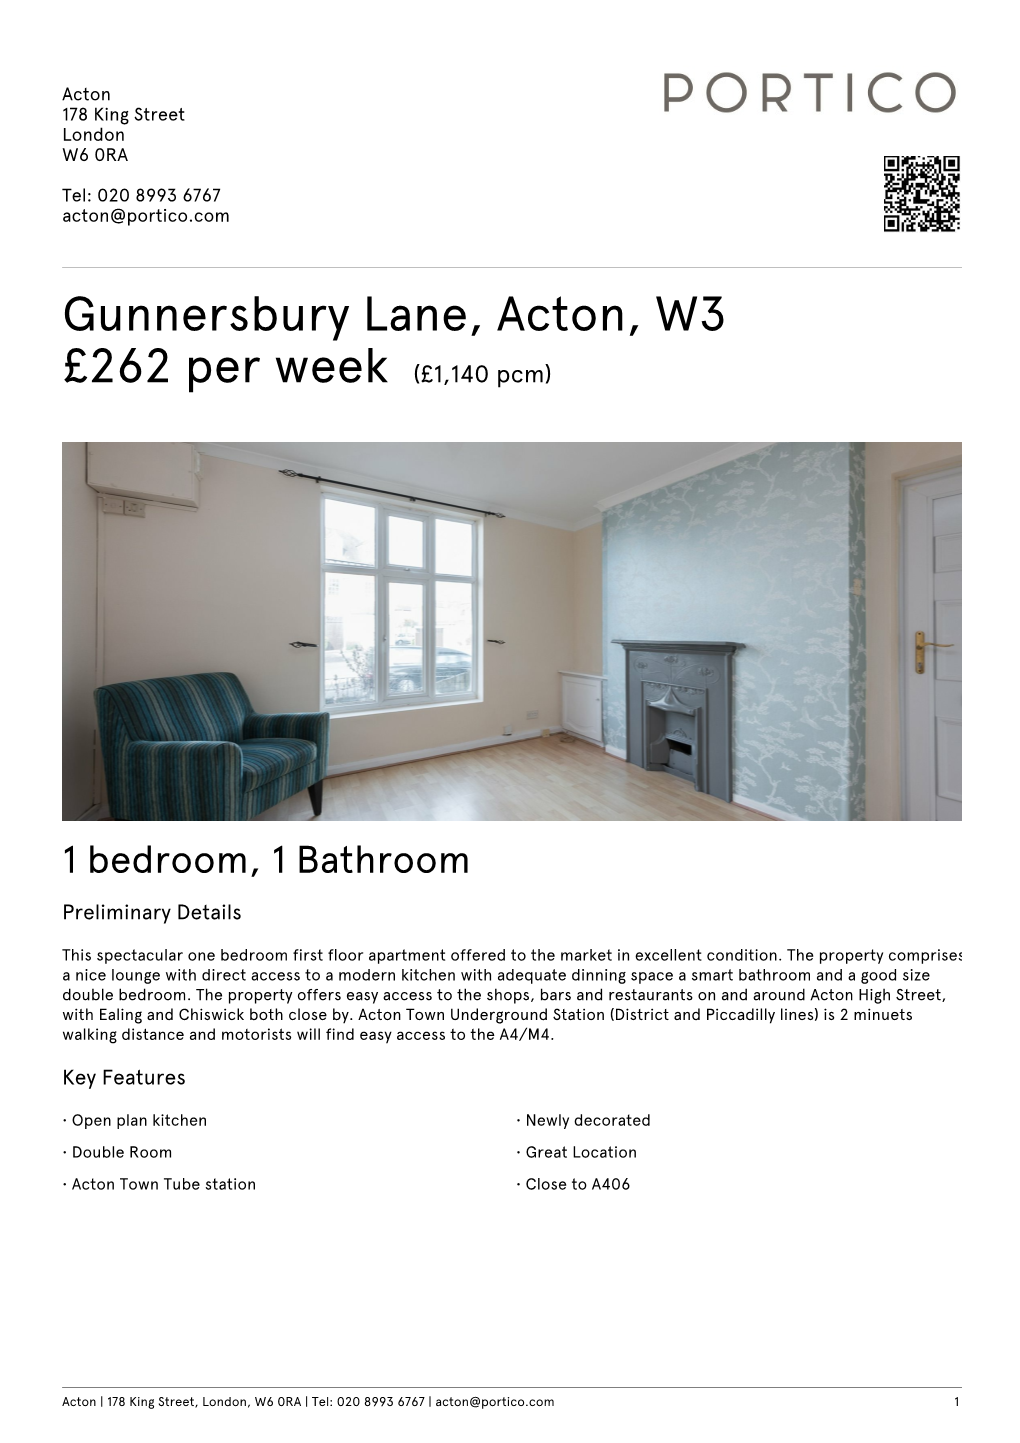 Gunnersbury Lane, Acton, W3 £262 Per Week